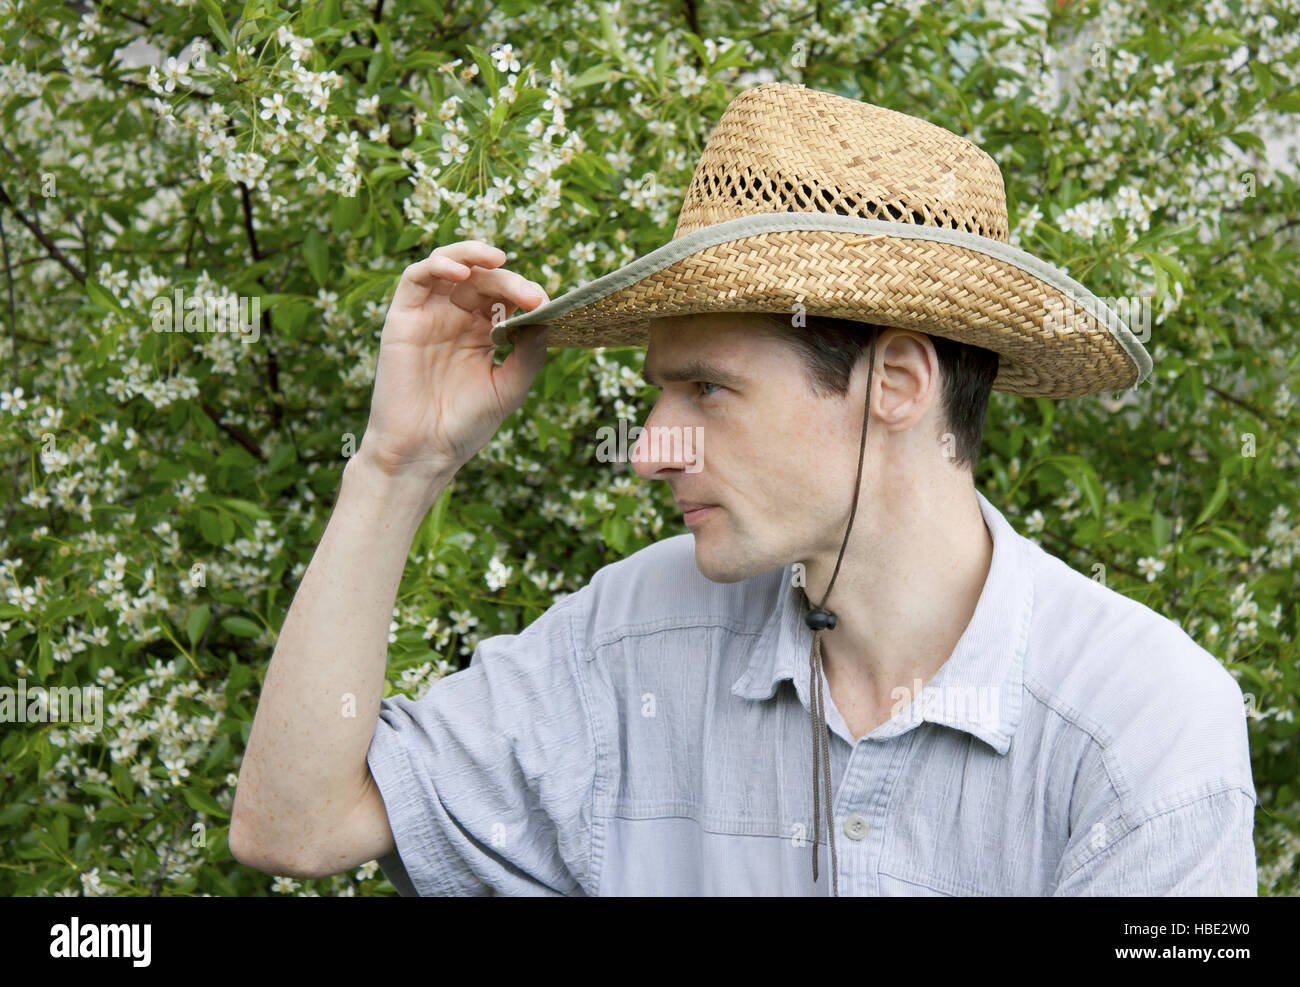 Un jeune homme dans un jardin de cerisier Banque D'Images